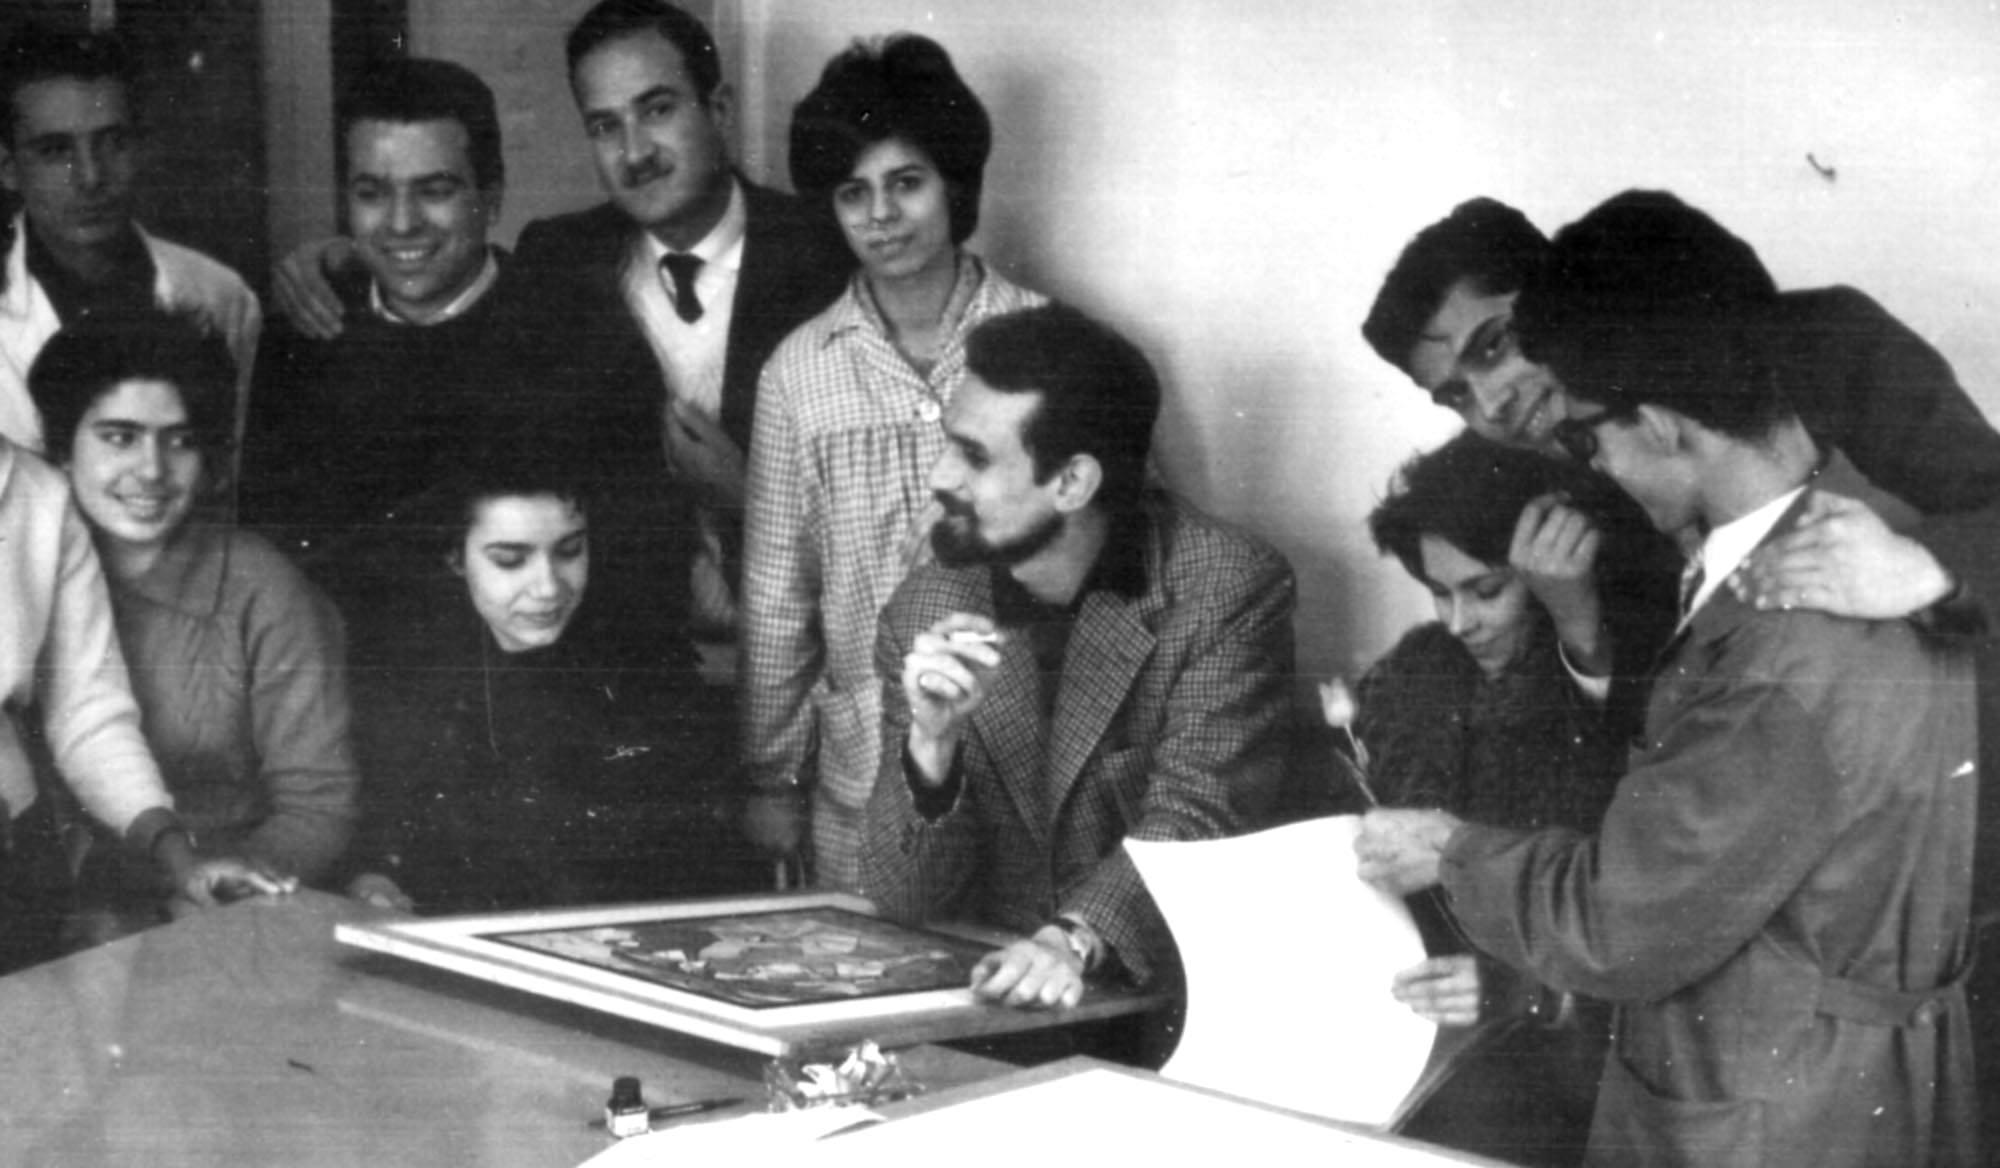 التاريخ السوري المعاصر - لؤي كيالي مع طلابه في كلية الفنون الجميلة عام 1963م